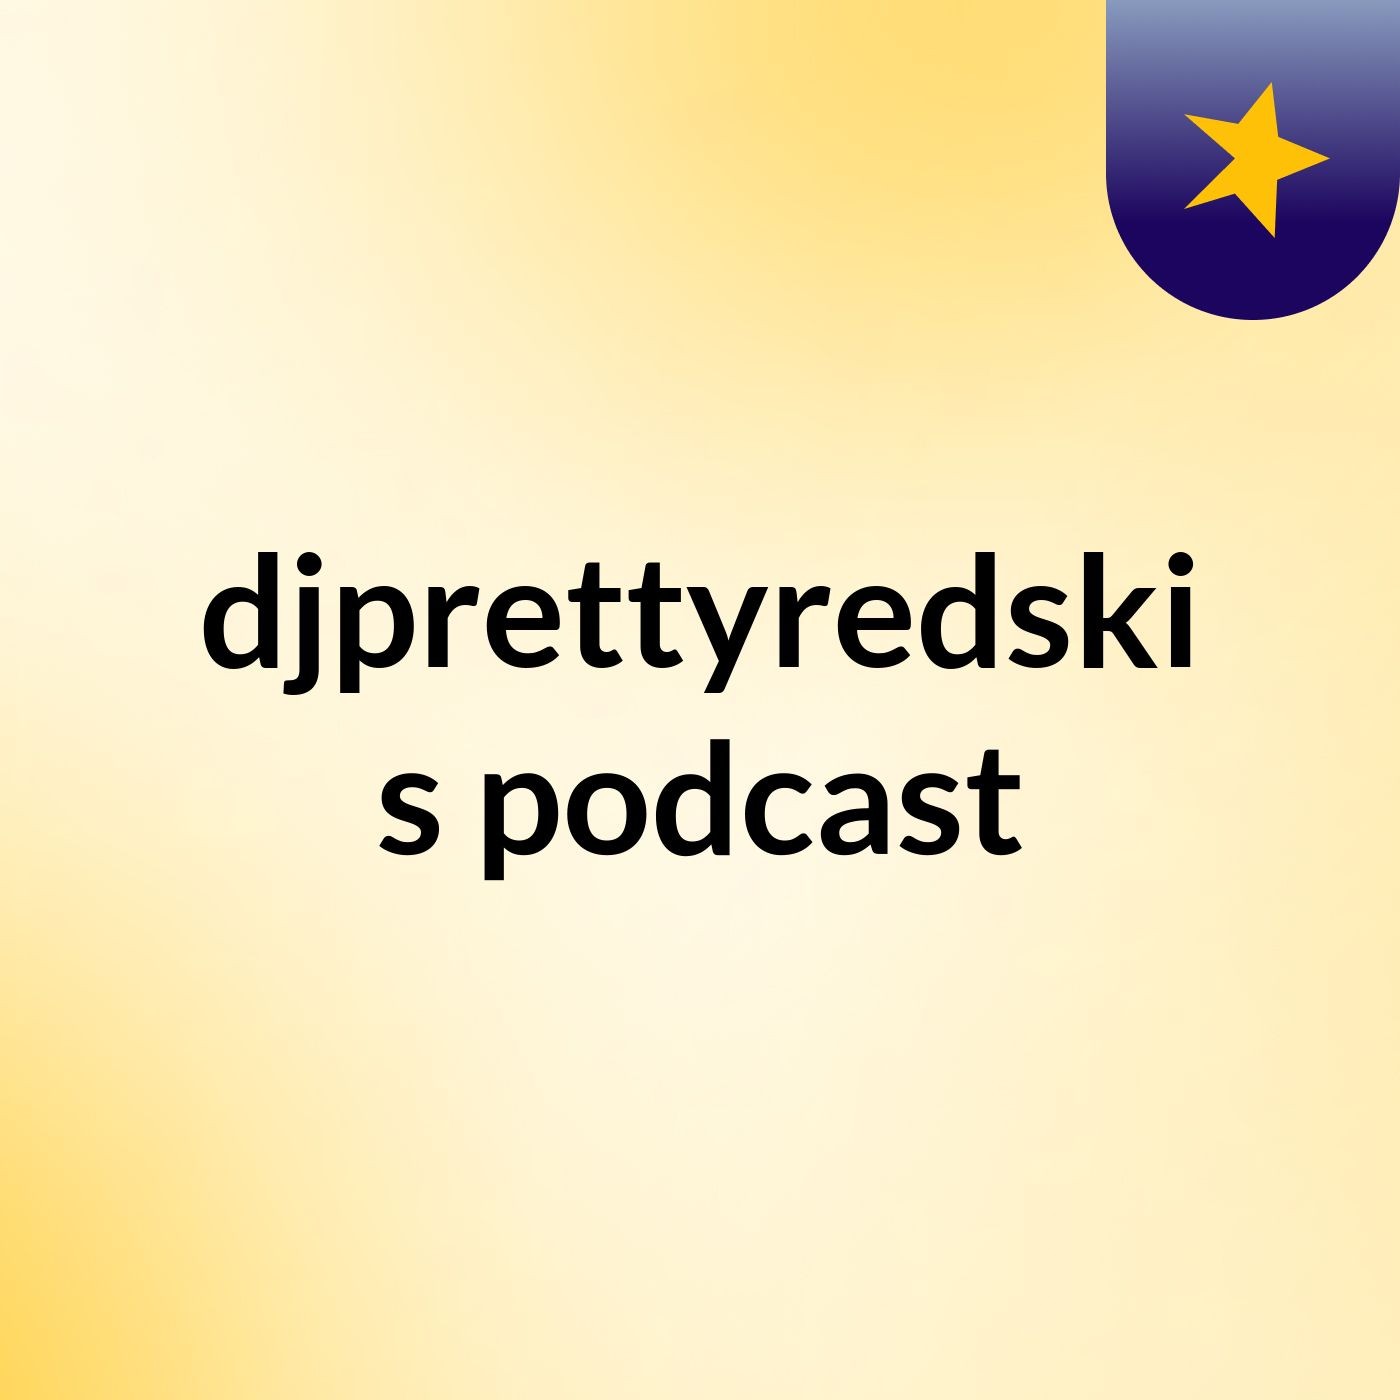 djprettyredski's podcast